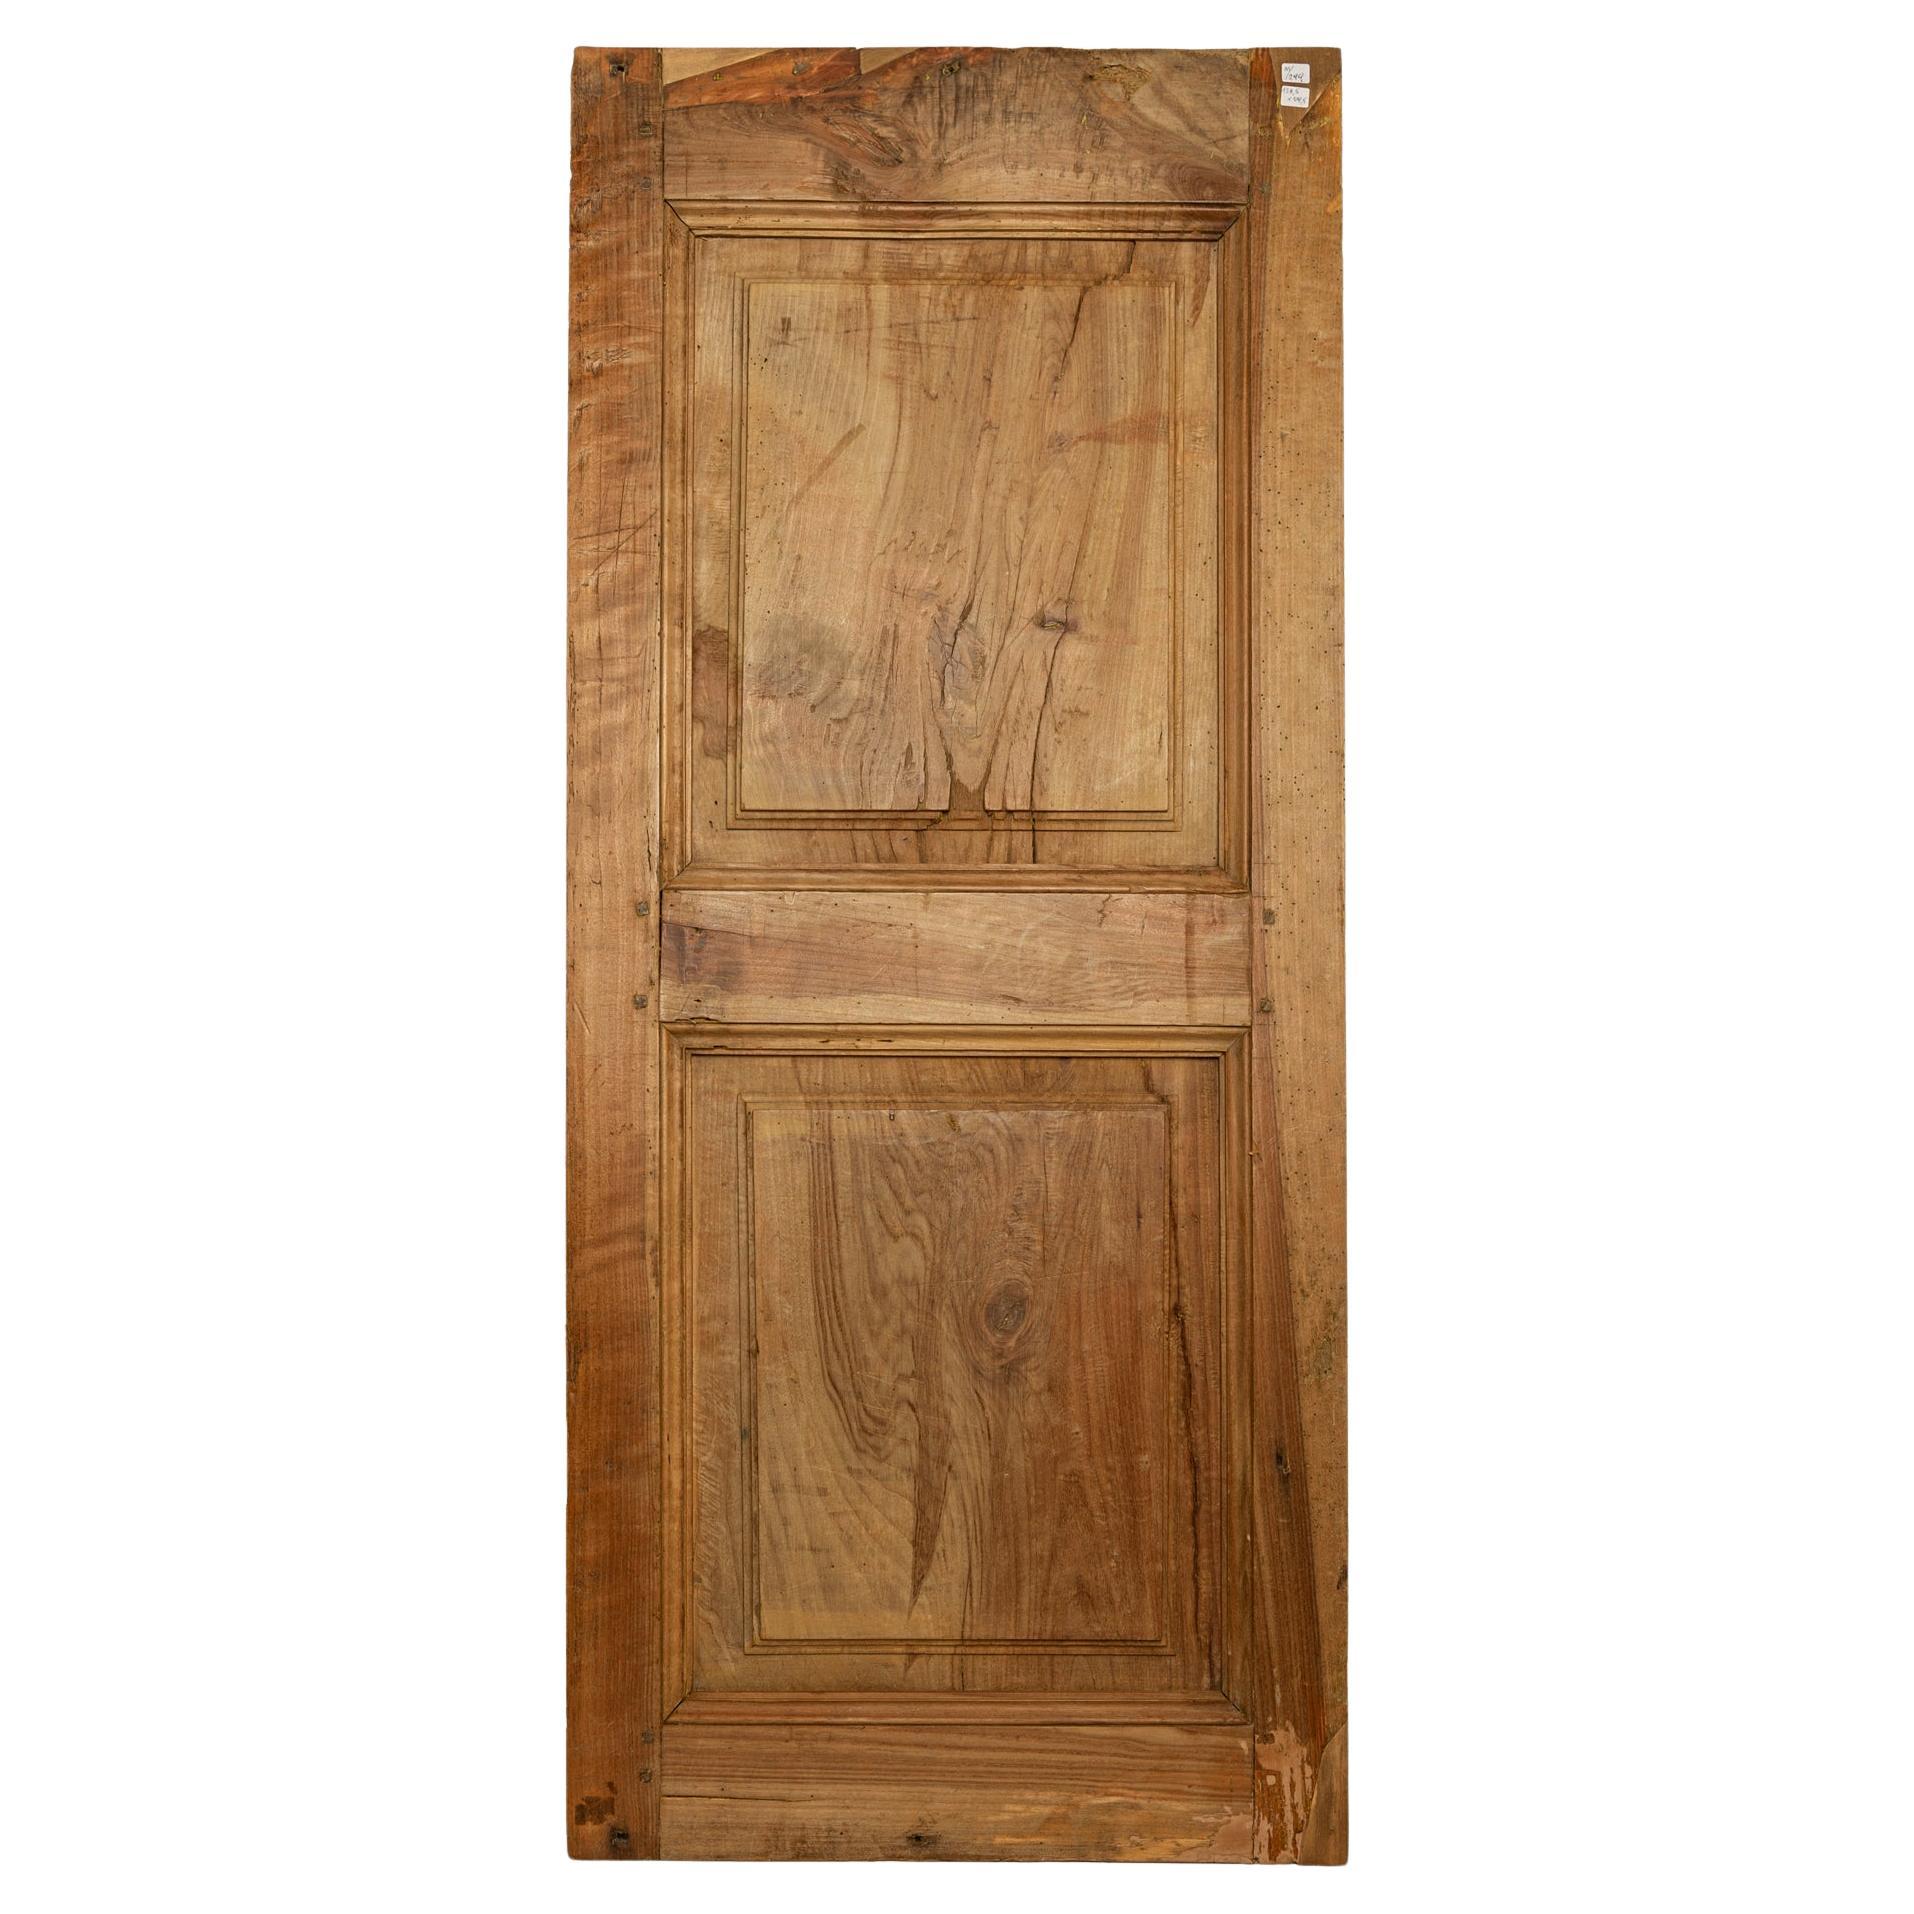 Holztafel mit kleiner antiker italienischer Tür aus Holz